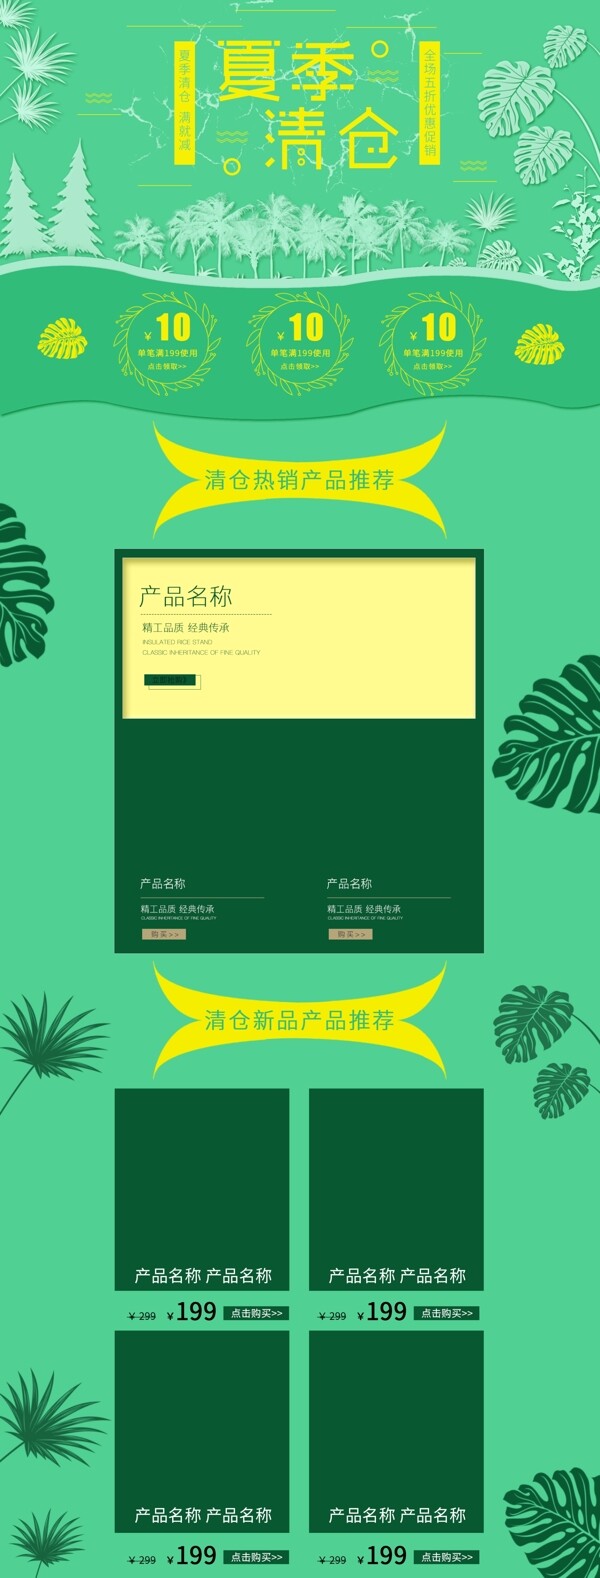 绿色清新手绘风格夏季清仓促销活动首页模板